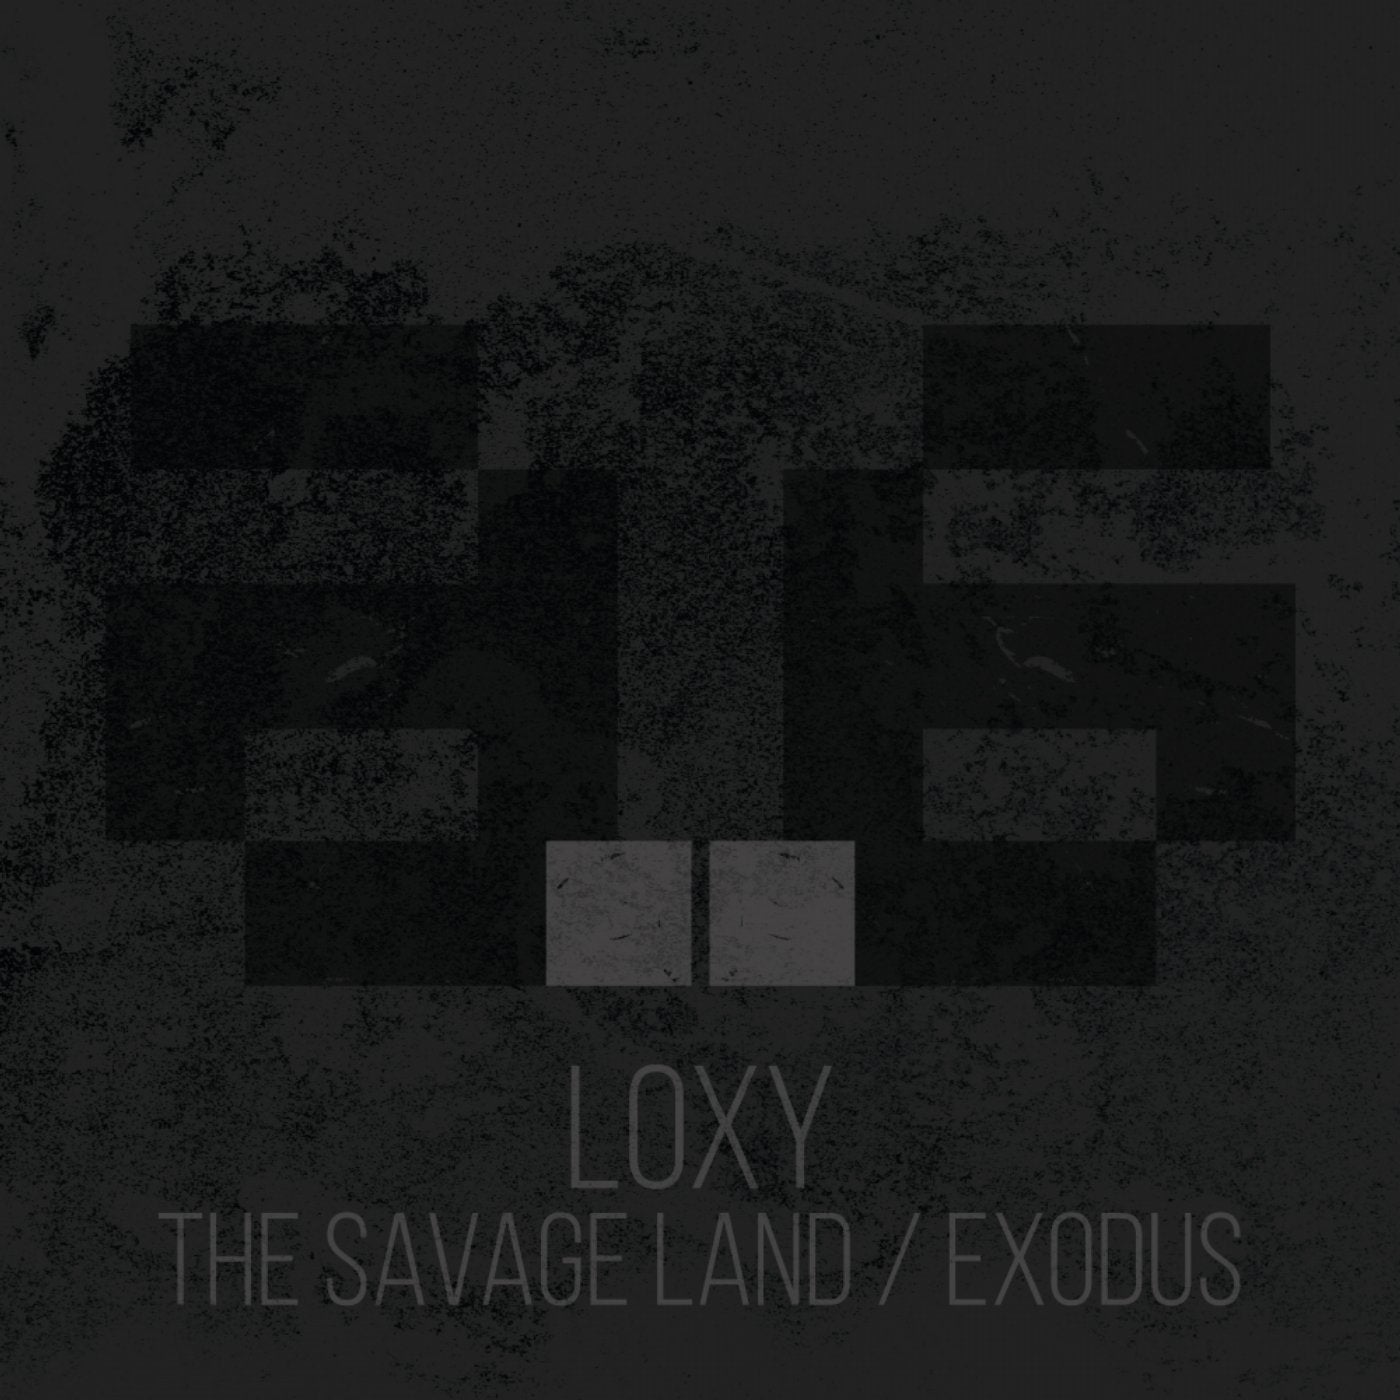 The Savage Land / Exodus